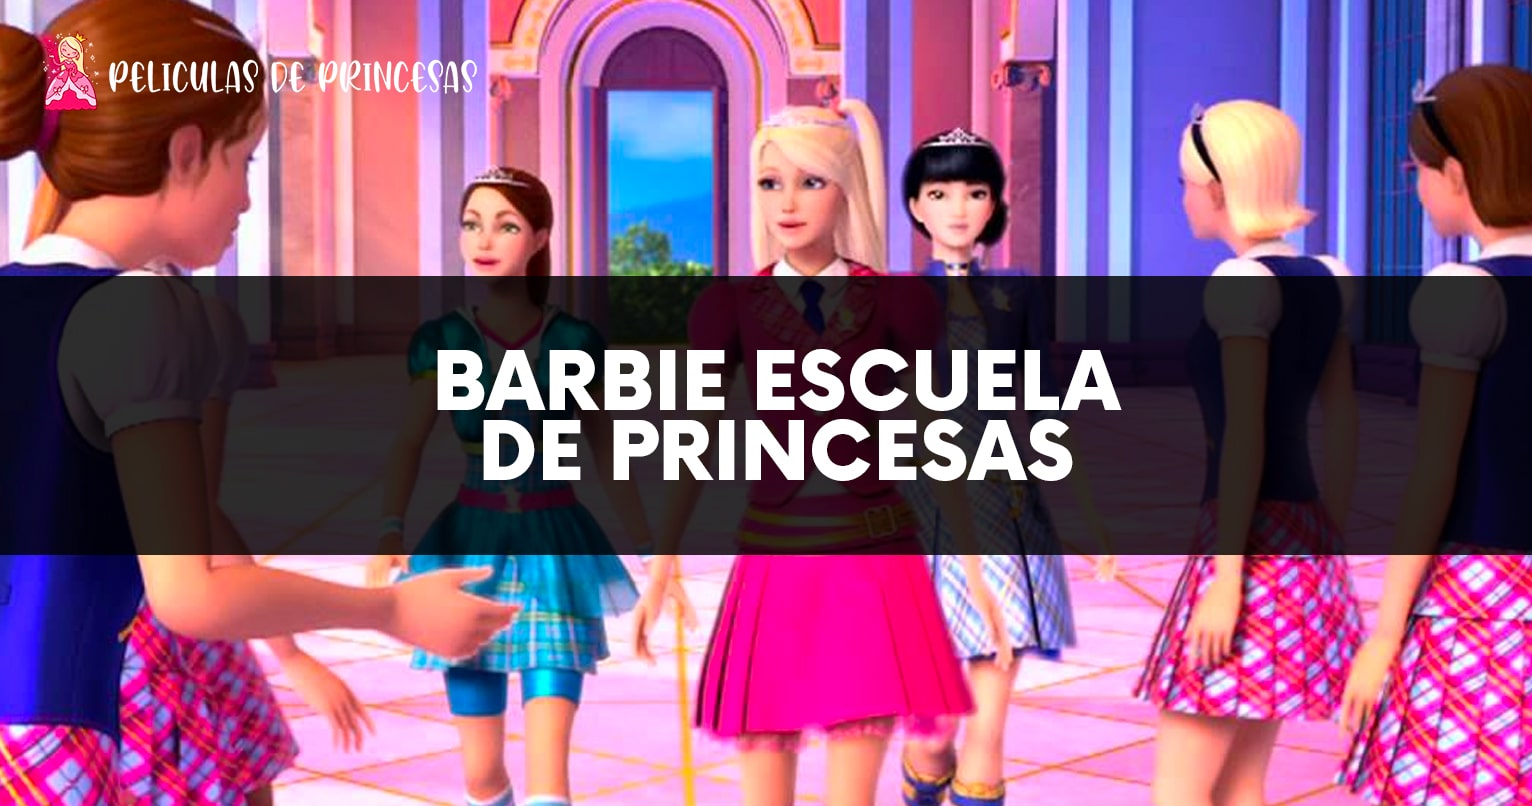 Barbie escuela de princesas – Película completa Gratis Online